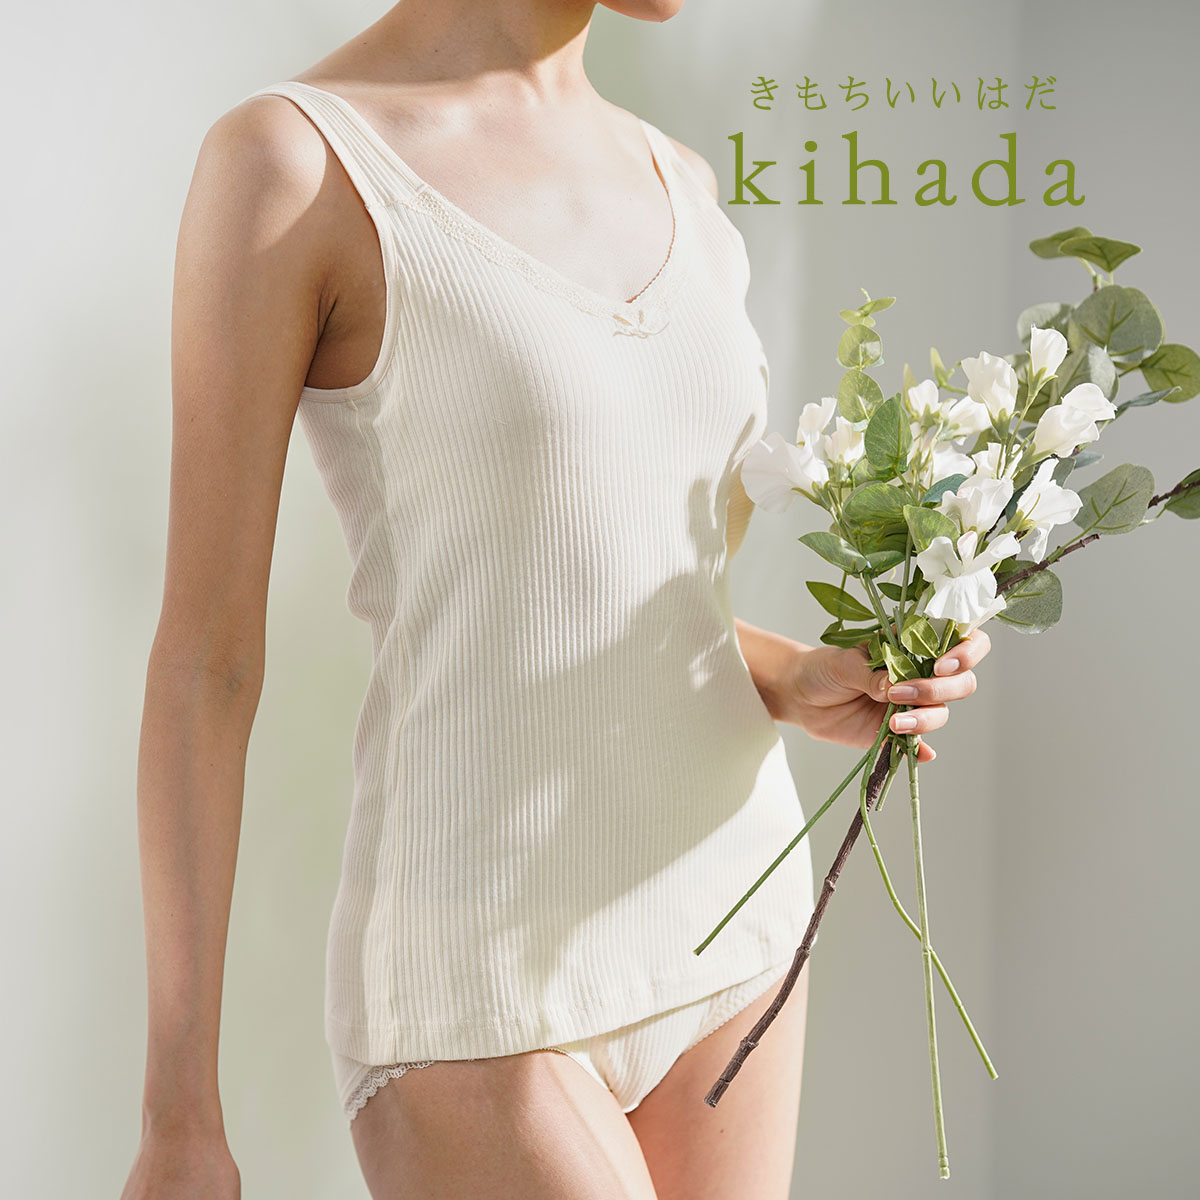 タンクトップ レディース kihada キハダ 綿100 カップ付 75-3032Mサイズ ホワイト系 婦人 女性 下着 肌着 インナー フクスケ  fukuske kihada 福助 公式通販オンラインストア